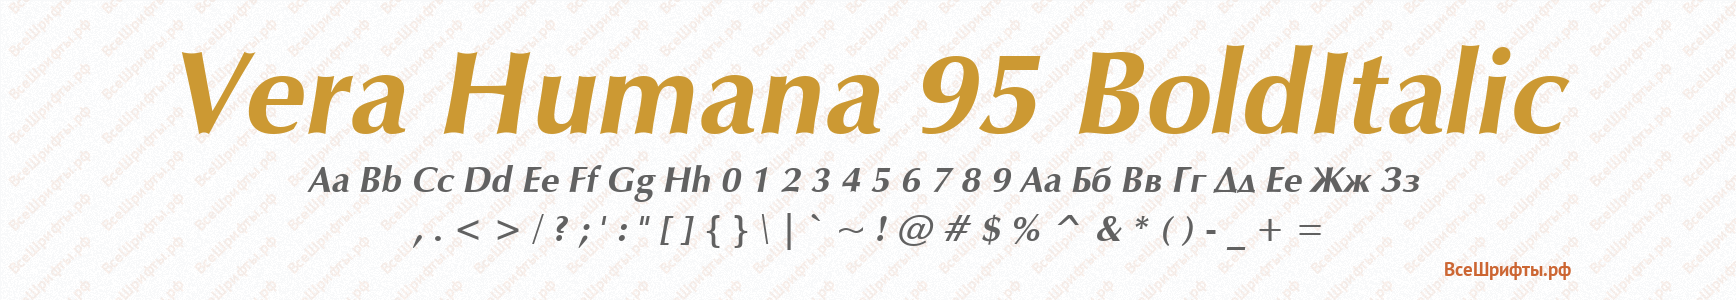 Шрифт Vera Humana 95 BoldItalic